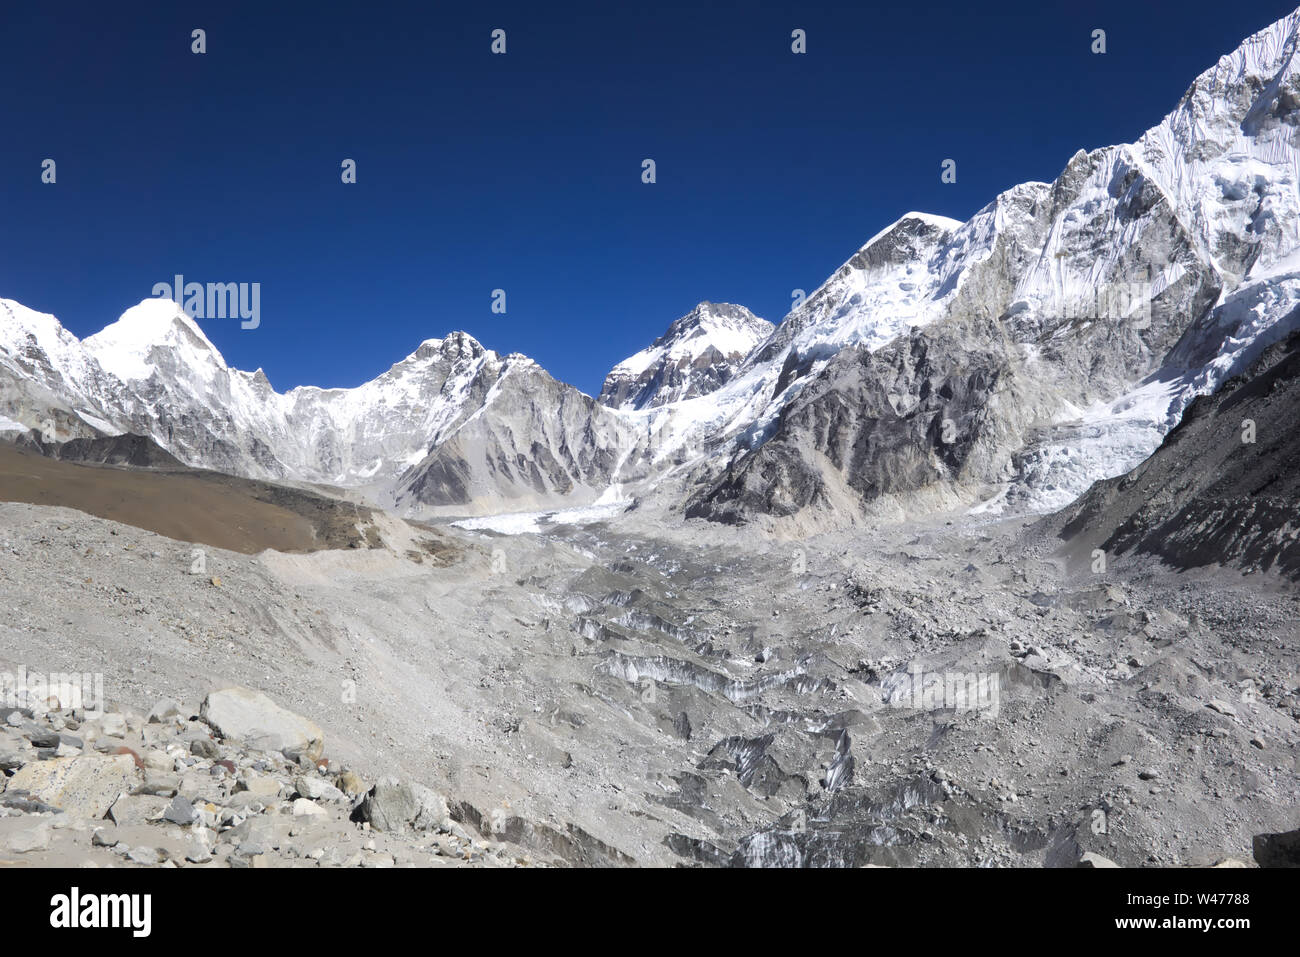 Khumbu glacier, overlooking Everest base camp, Nepal Stock Photo